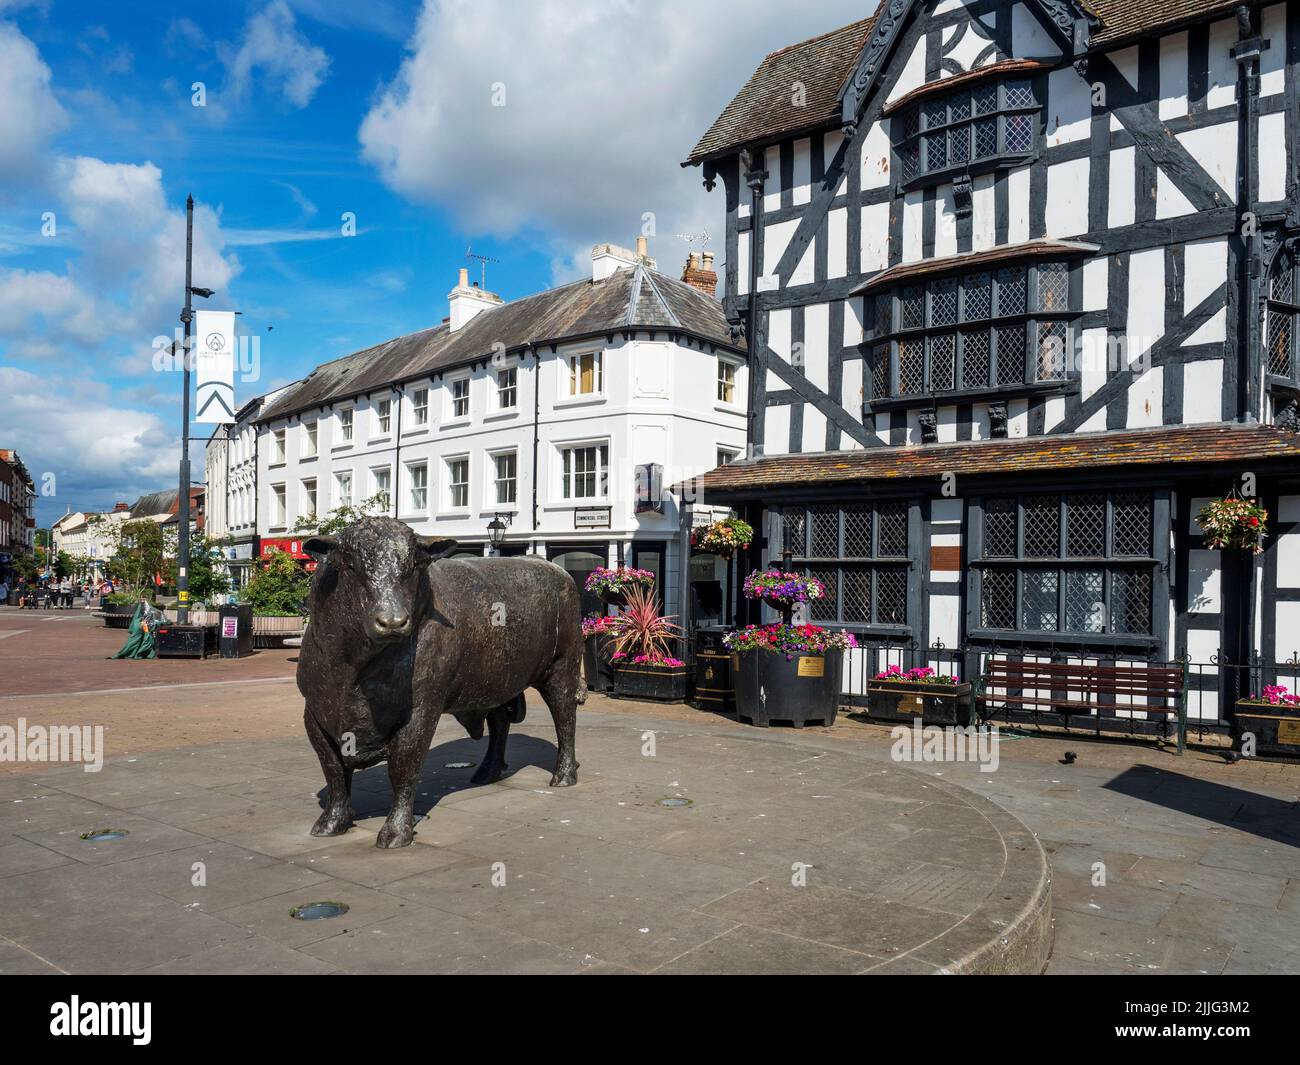 La sculpture de taureaux de Hereford et le Musée de la Maison-Blanche sur la ville haute de Hereford Herefordshire Angleterre Banque D'Images